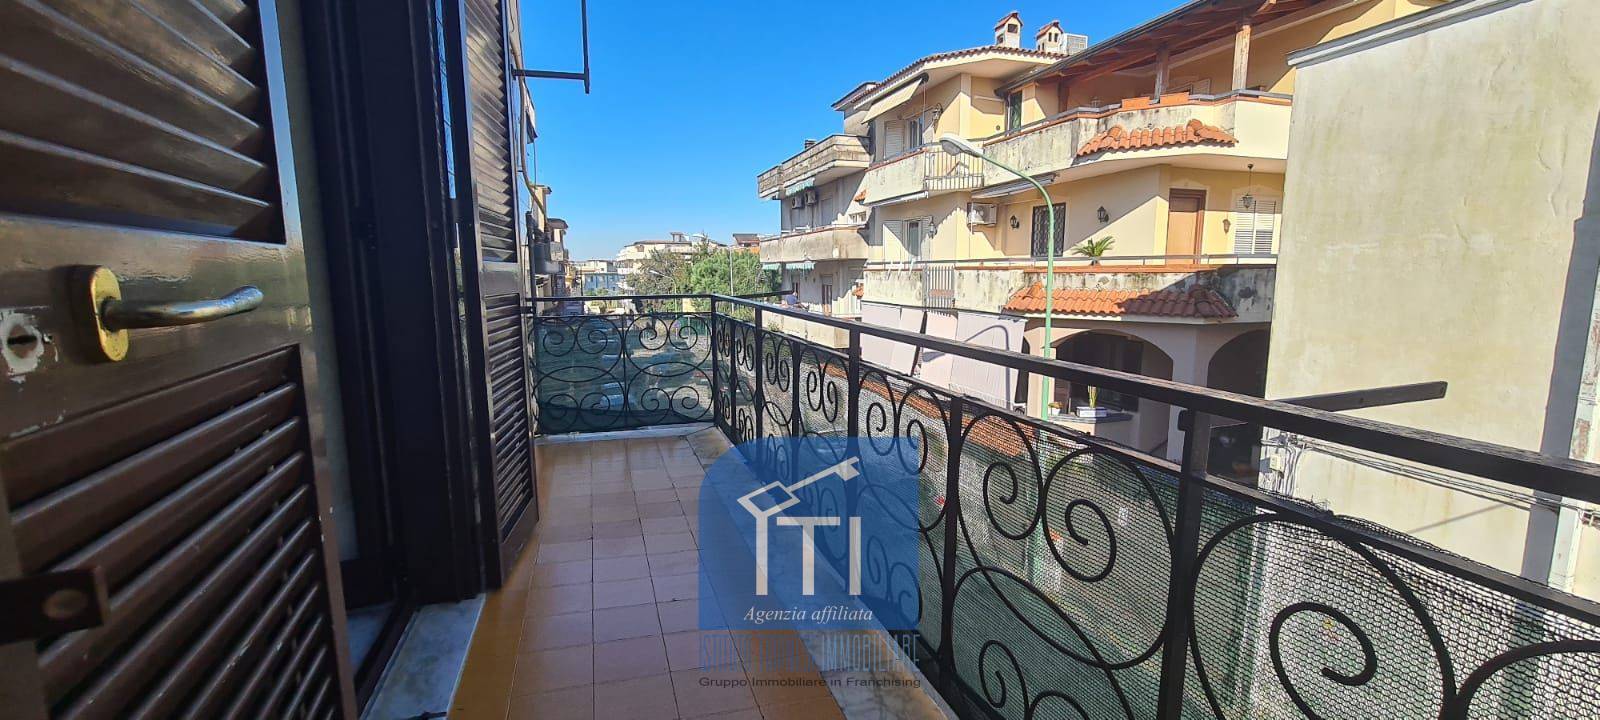 Appartamento in vendita a Qualiano, 3 locali, prezzo € 103.000 | PortaleAgenzieImmobiliari.it